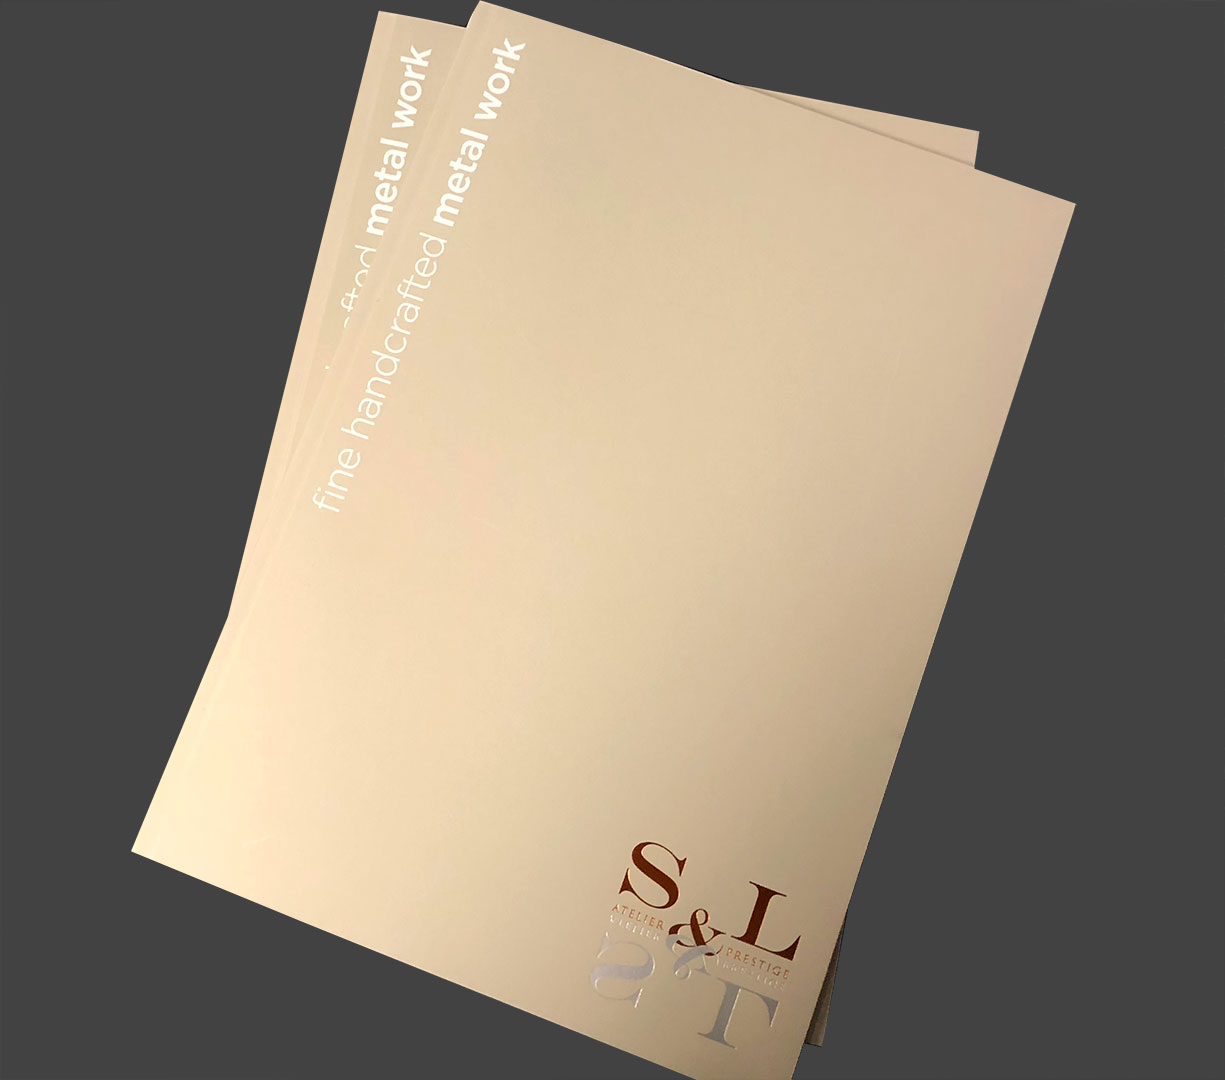 Atelier S&L Prestige - Conception, création de la brochure S&L Prestige - 2